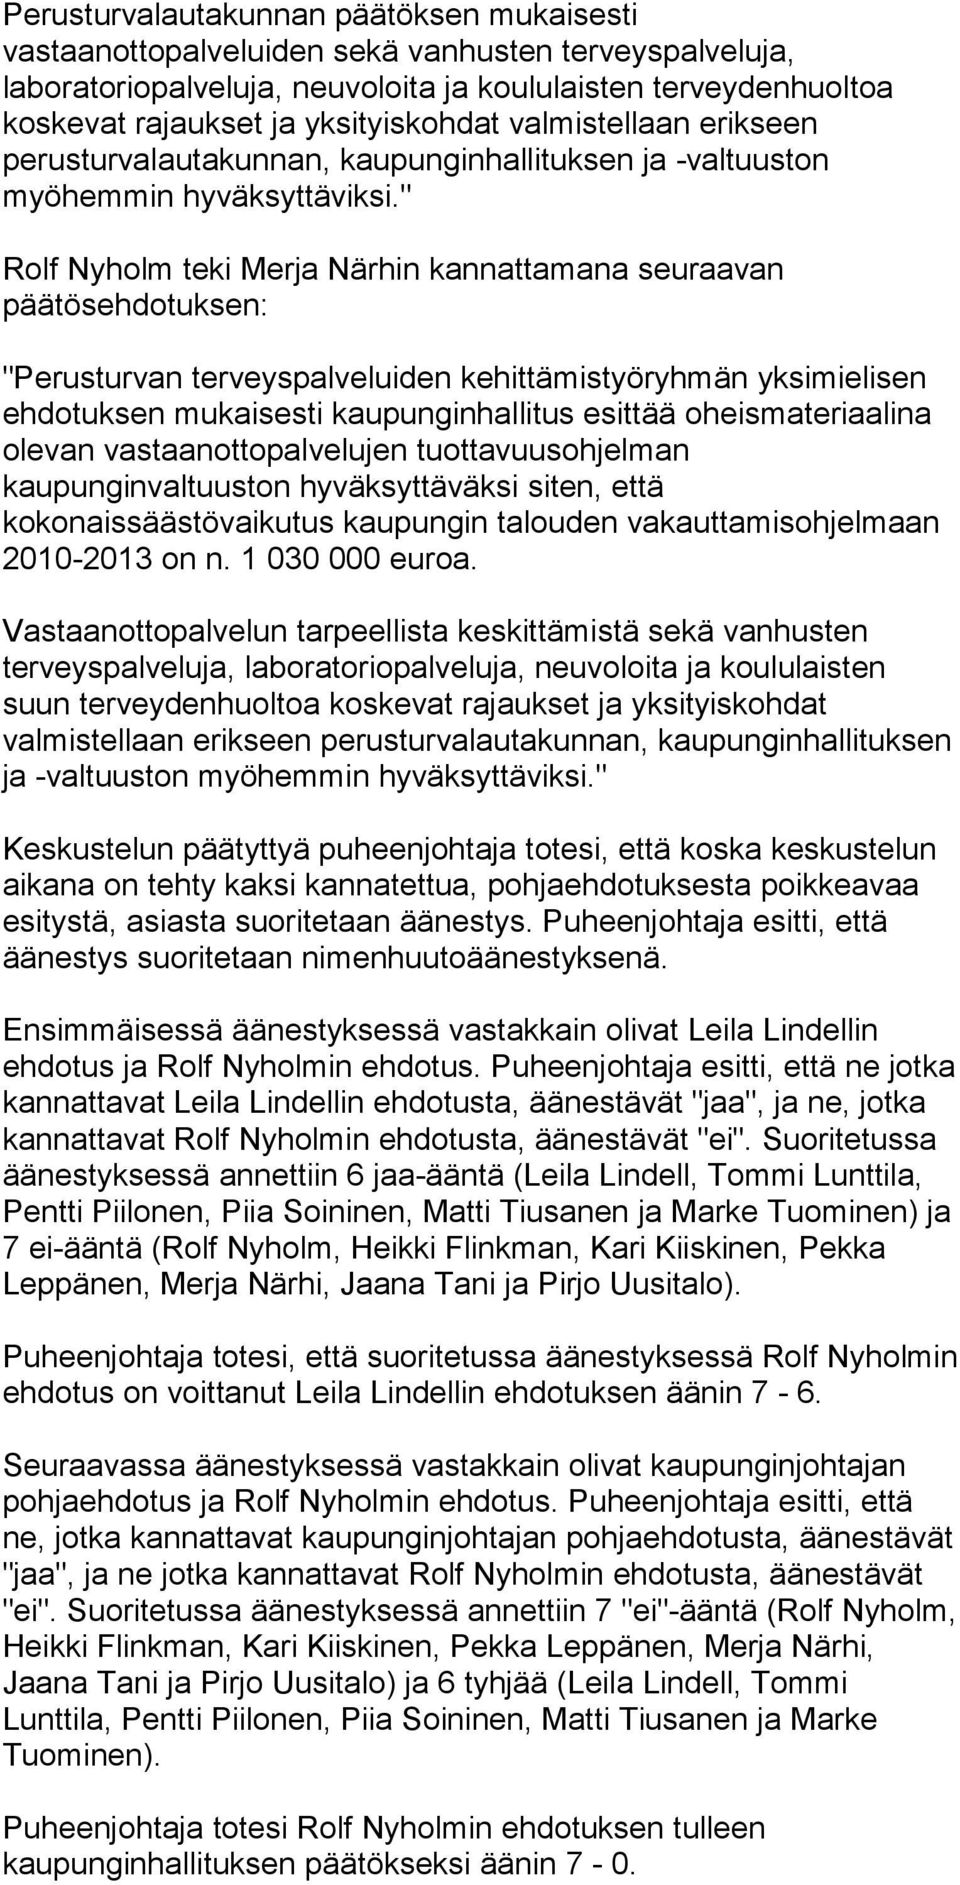 " Rolf Nyholm teki Merja Närhin kannattamana seuraavan päätösehdotuksen: "Perusturvan terveyspalveluiden kehittämistyöryhmän yksimielisen ehdotuksen mukaisesti kaupunginhallitus esittää